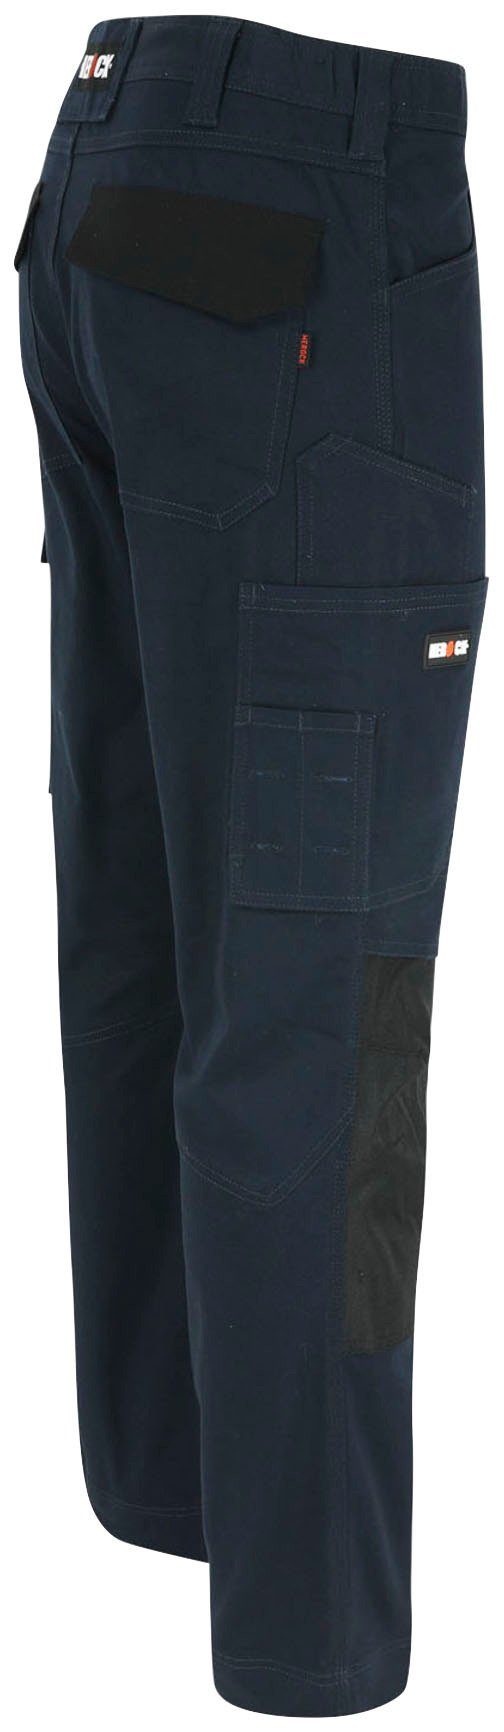 Herock Arbeitshose DERO Slim Fit wasserabweisend 2-Wege-Stretch, marine Multi-Pocket, Passform